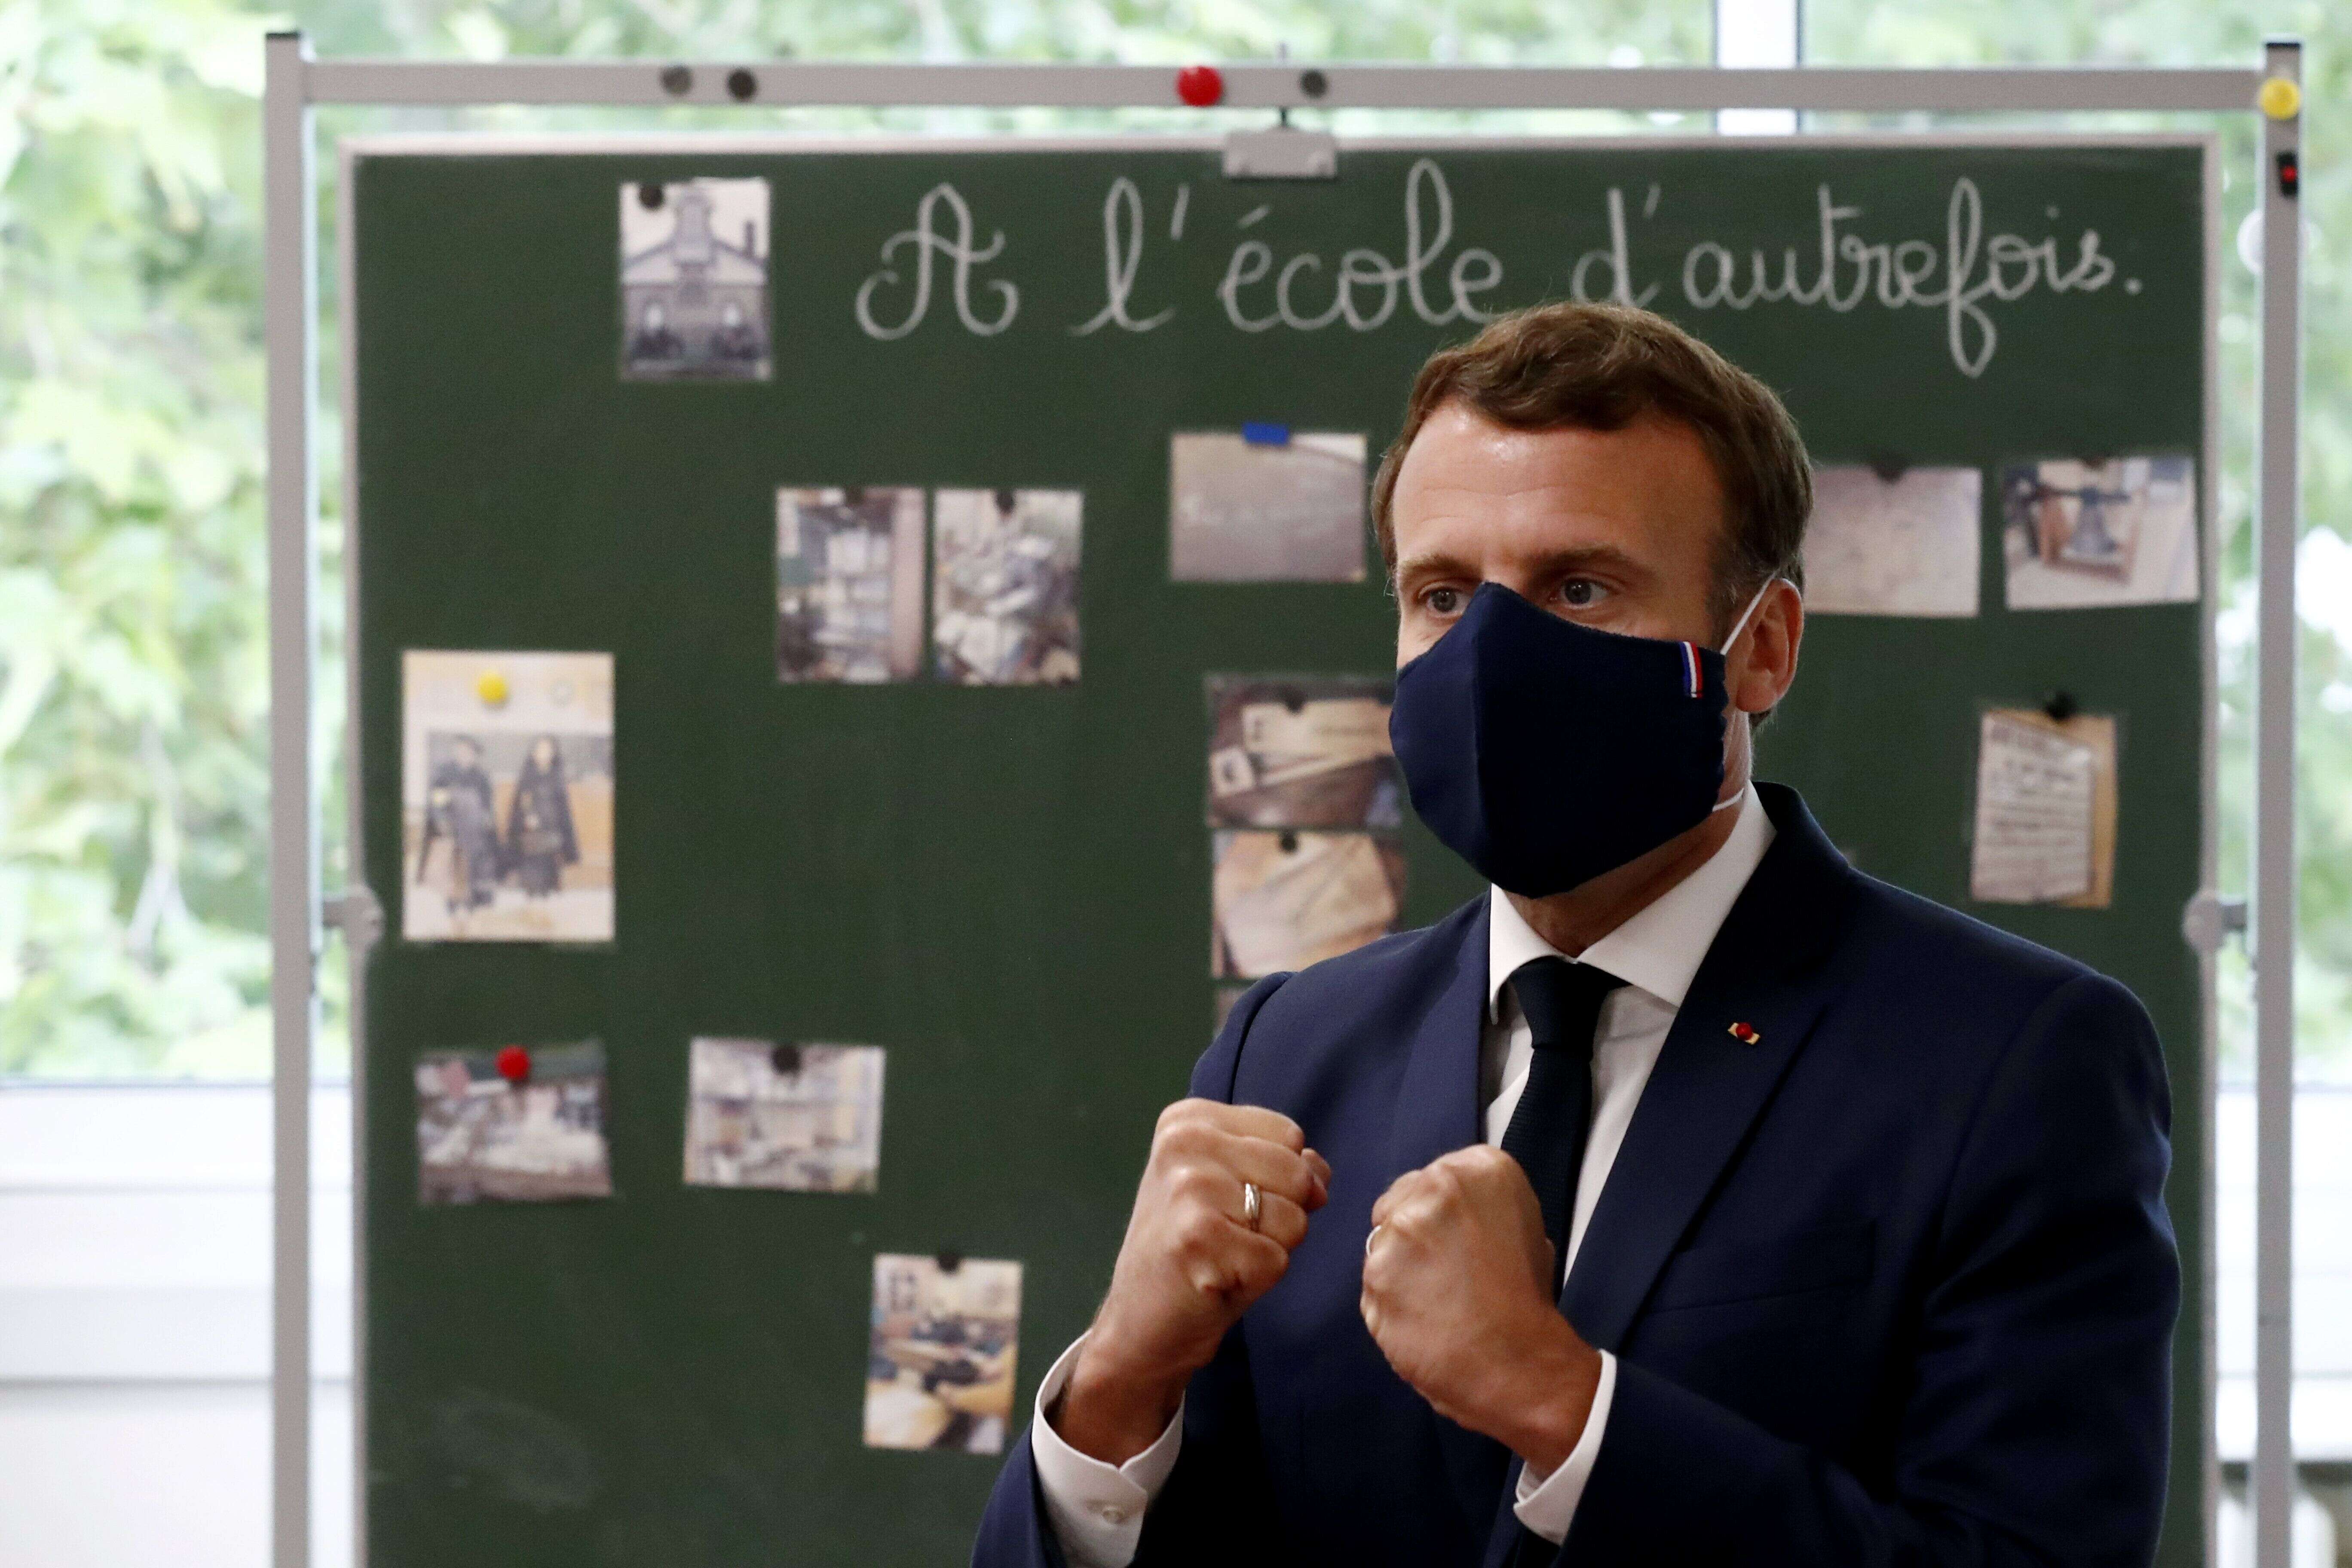 Le président Emmanuel Macron s'est rendu dans une école de Poissy pour rassurer les parents et professionnels de l'éducation sur la rentrée des classes.